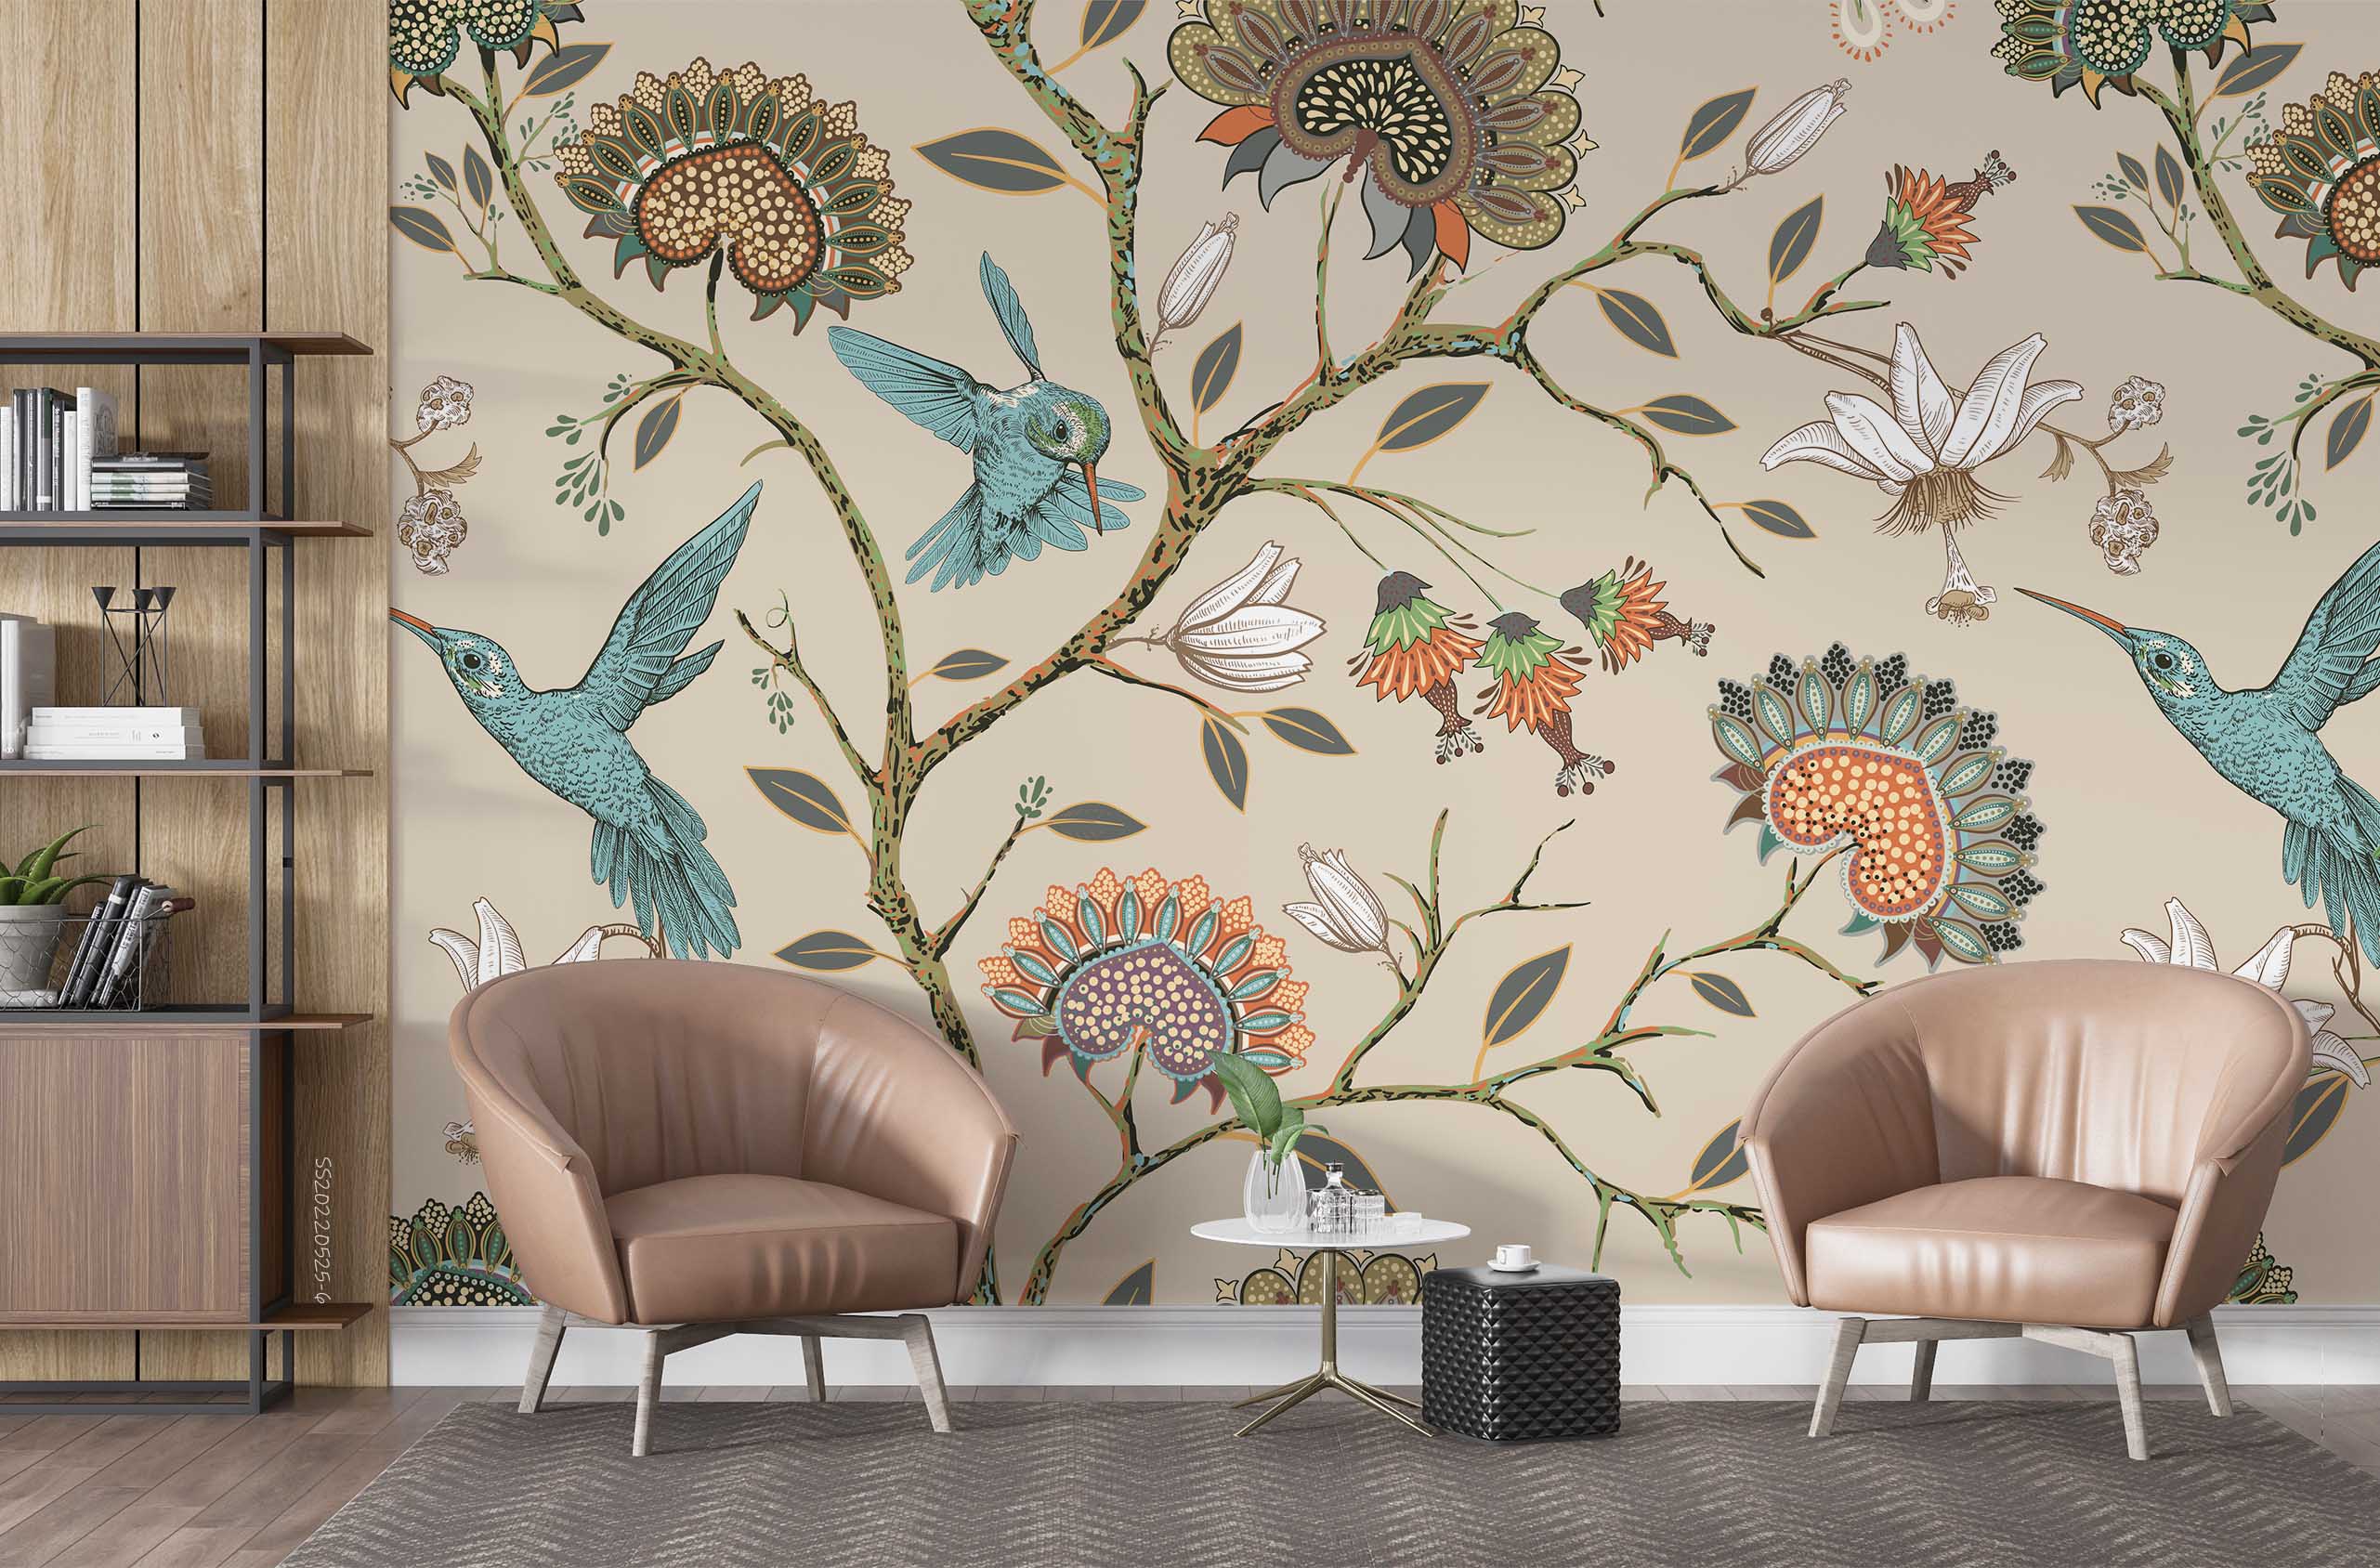 3D Vintage Branch Floral Hummingbird Wall Mural Wallpaper GD 1220- Jess Art Decoration